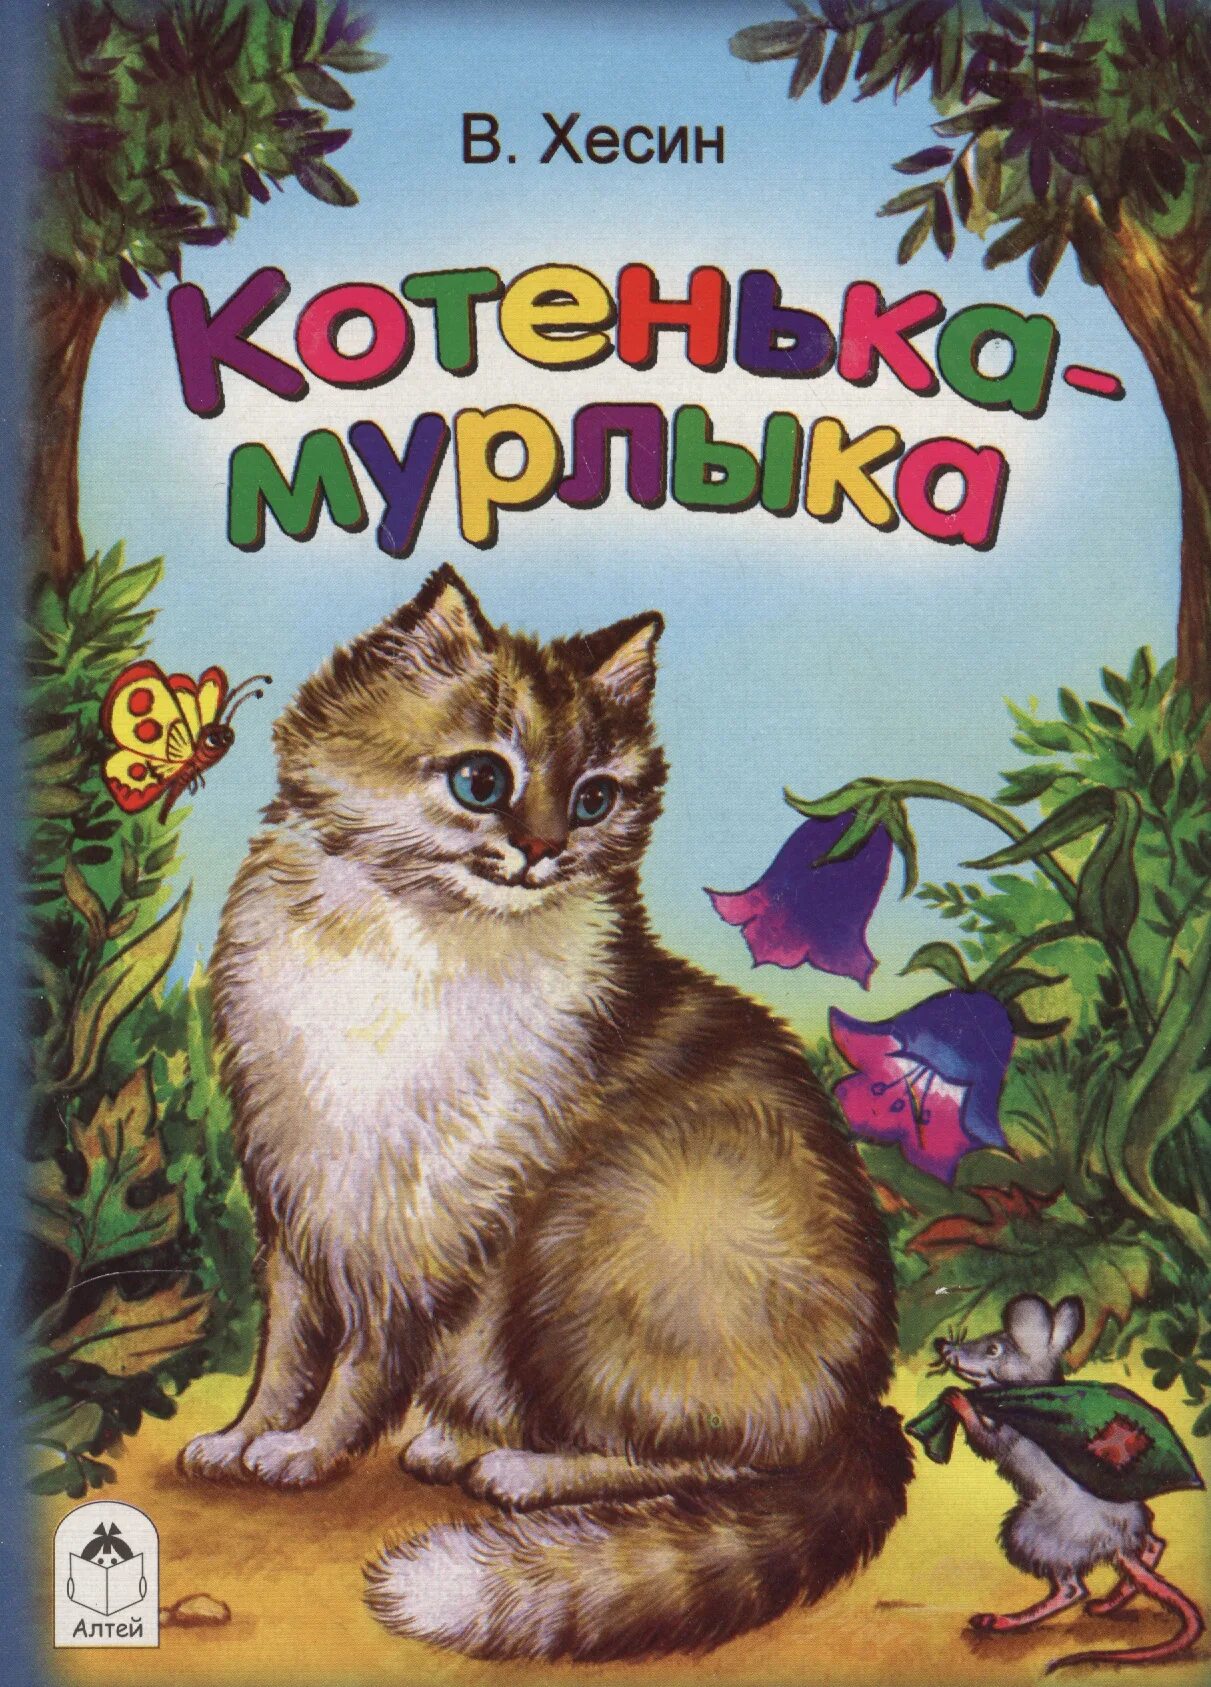 Какой кот мурлыка. Книги про котов для детей. Хесин в. "котенька-Мурлыка". Кот Мурлыка рисунок. Котик Мурлыка.